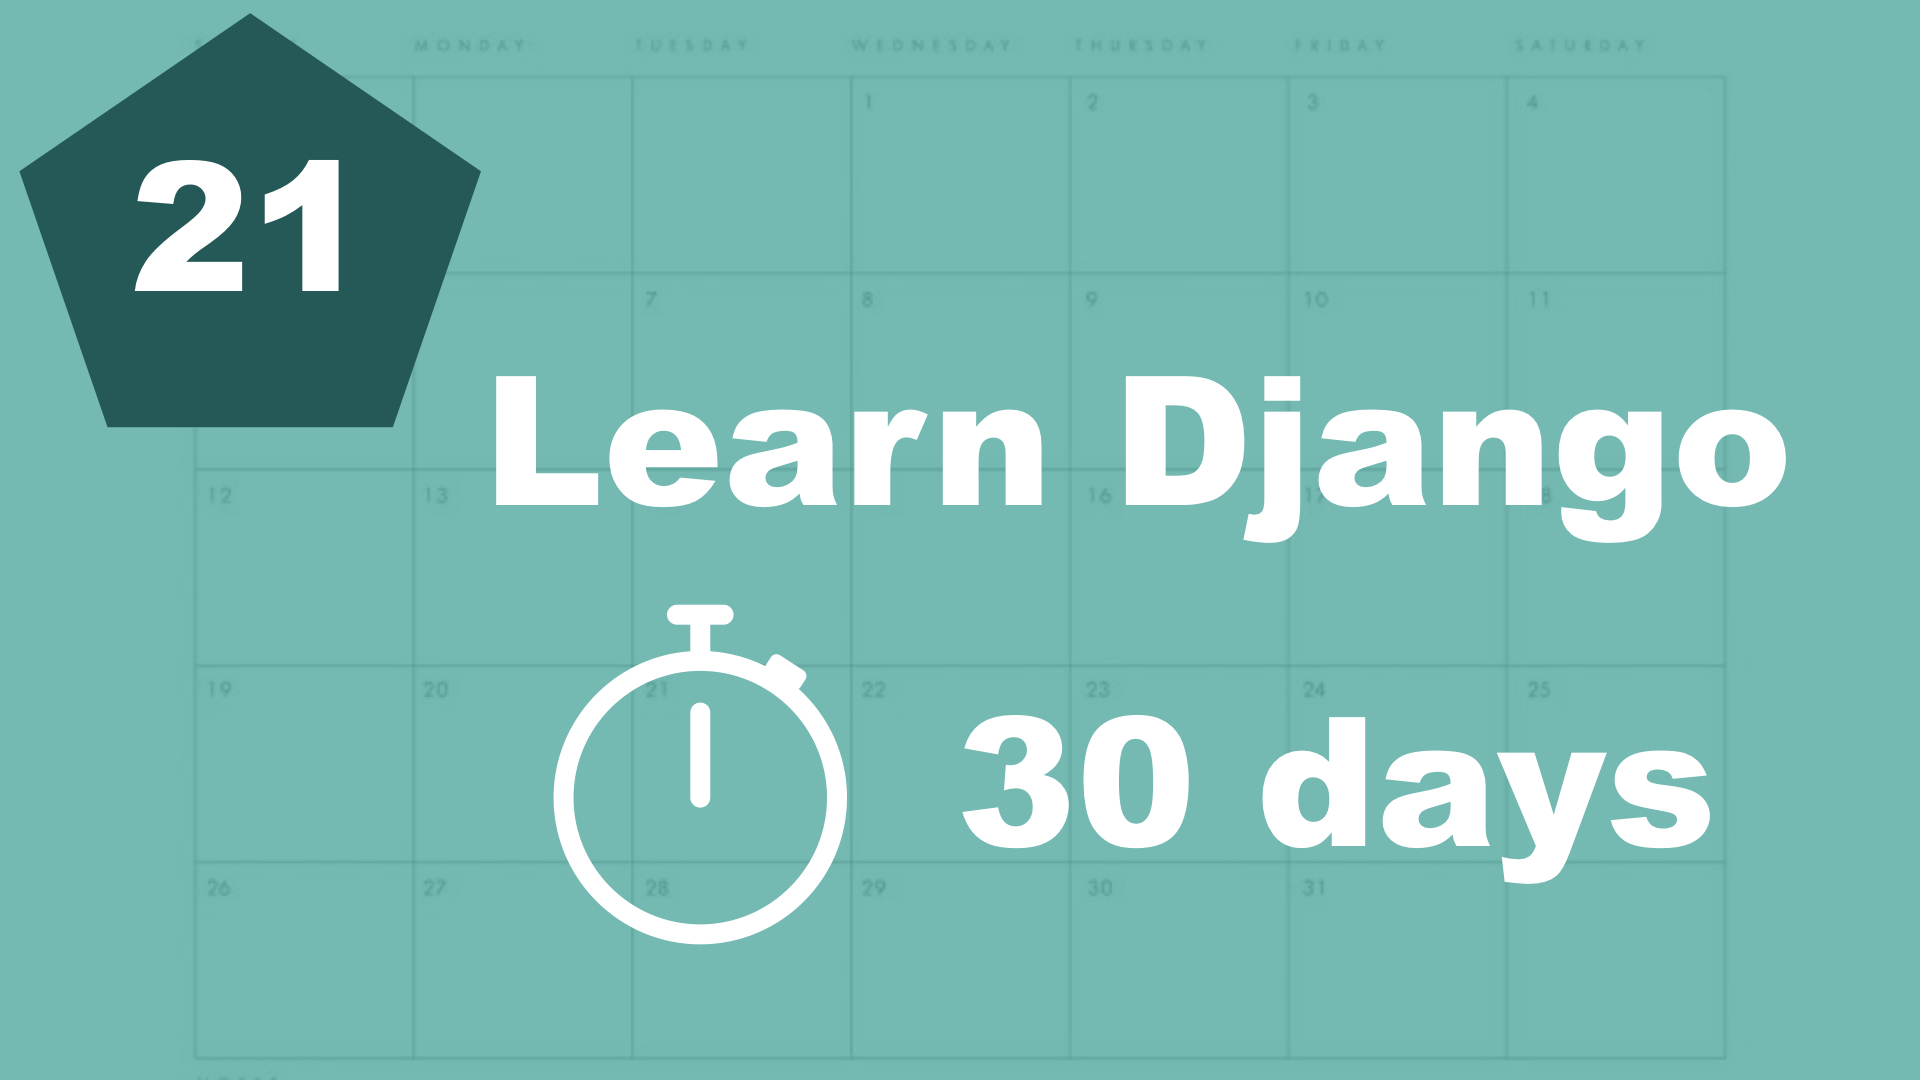 Prettying up the design a little bit - 30 days of Django